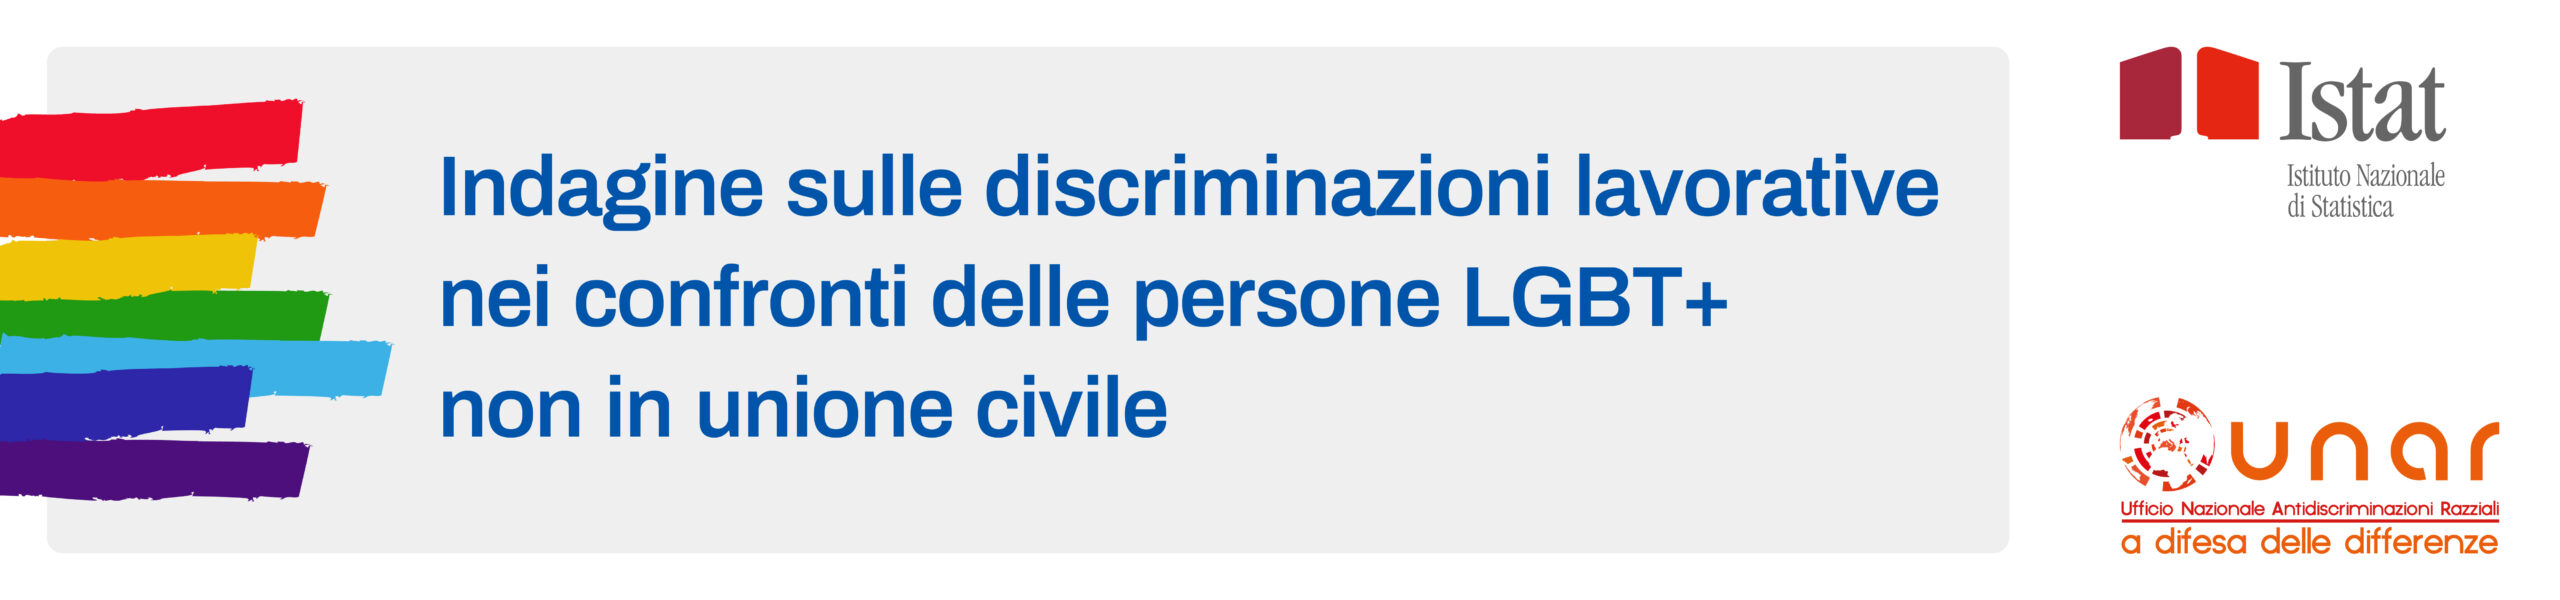 Indagine Istat sulle discriminazioni lavorative nei confronti delle persone LGBT (non in unione civile)